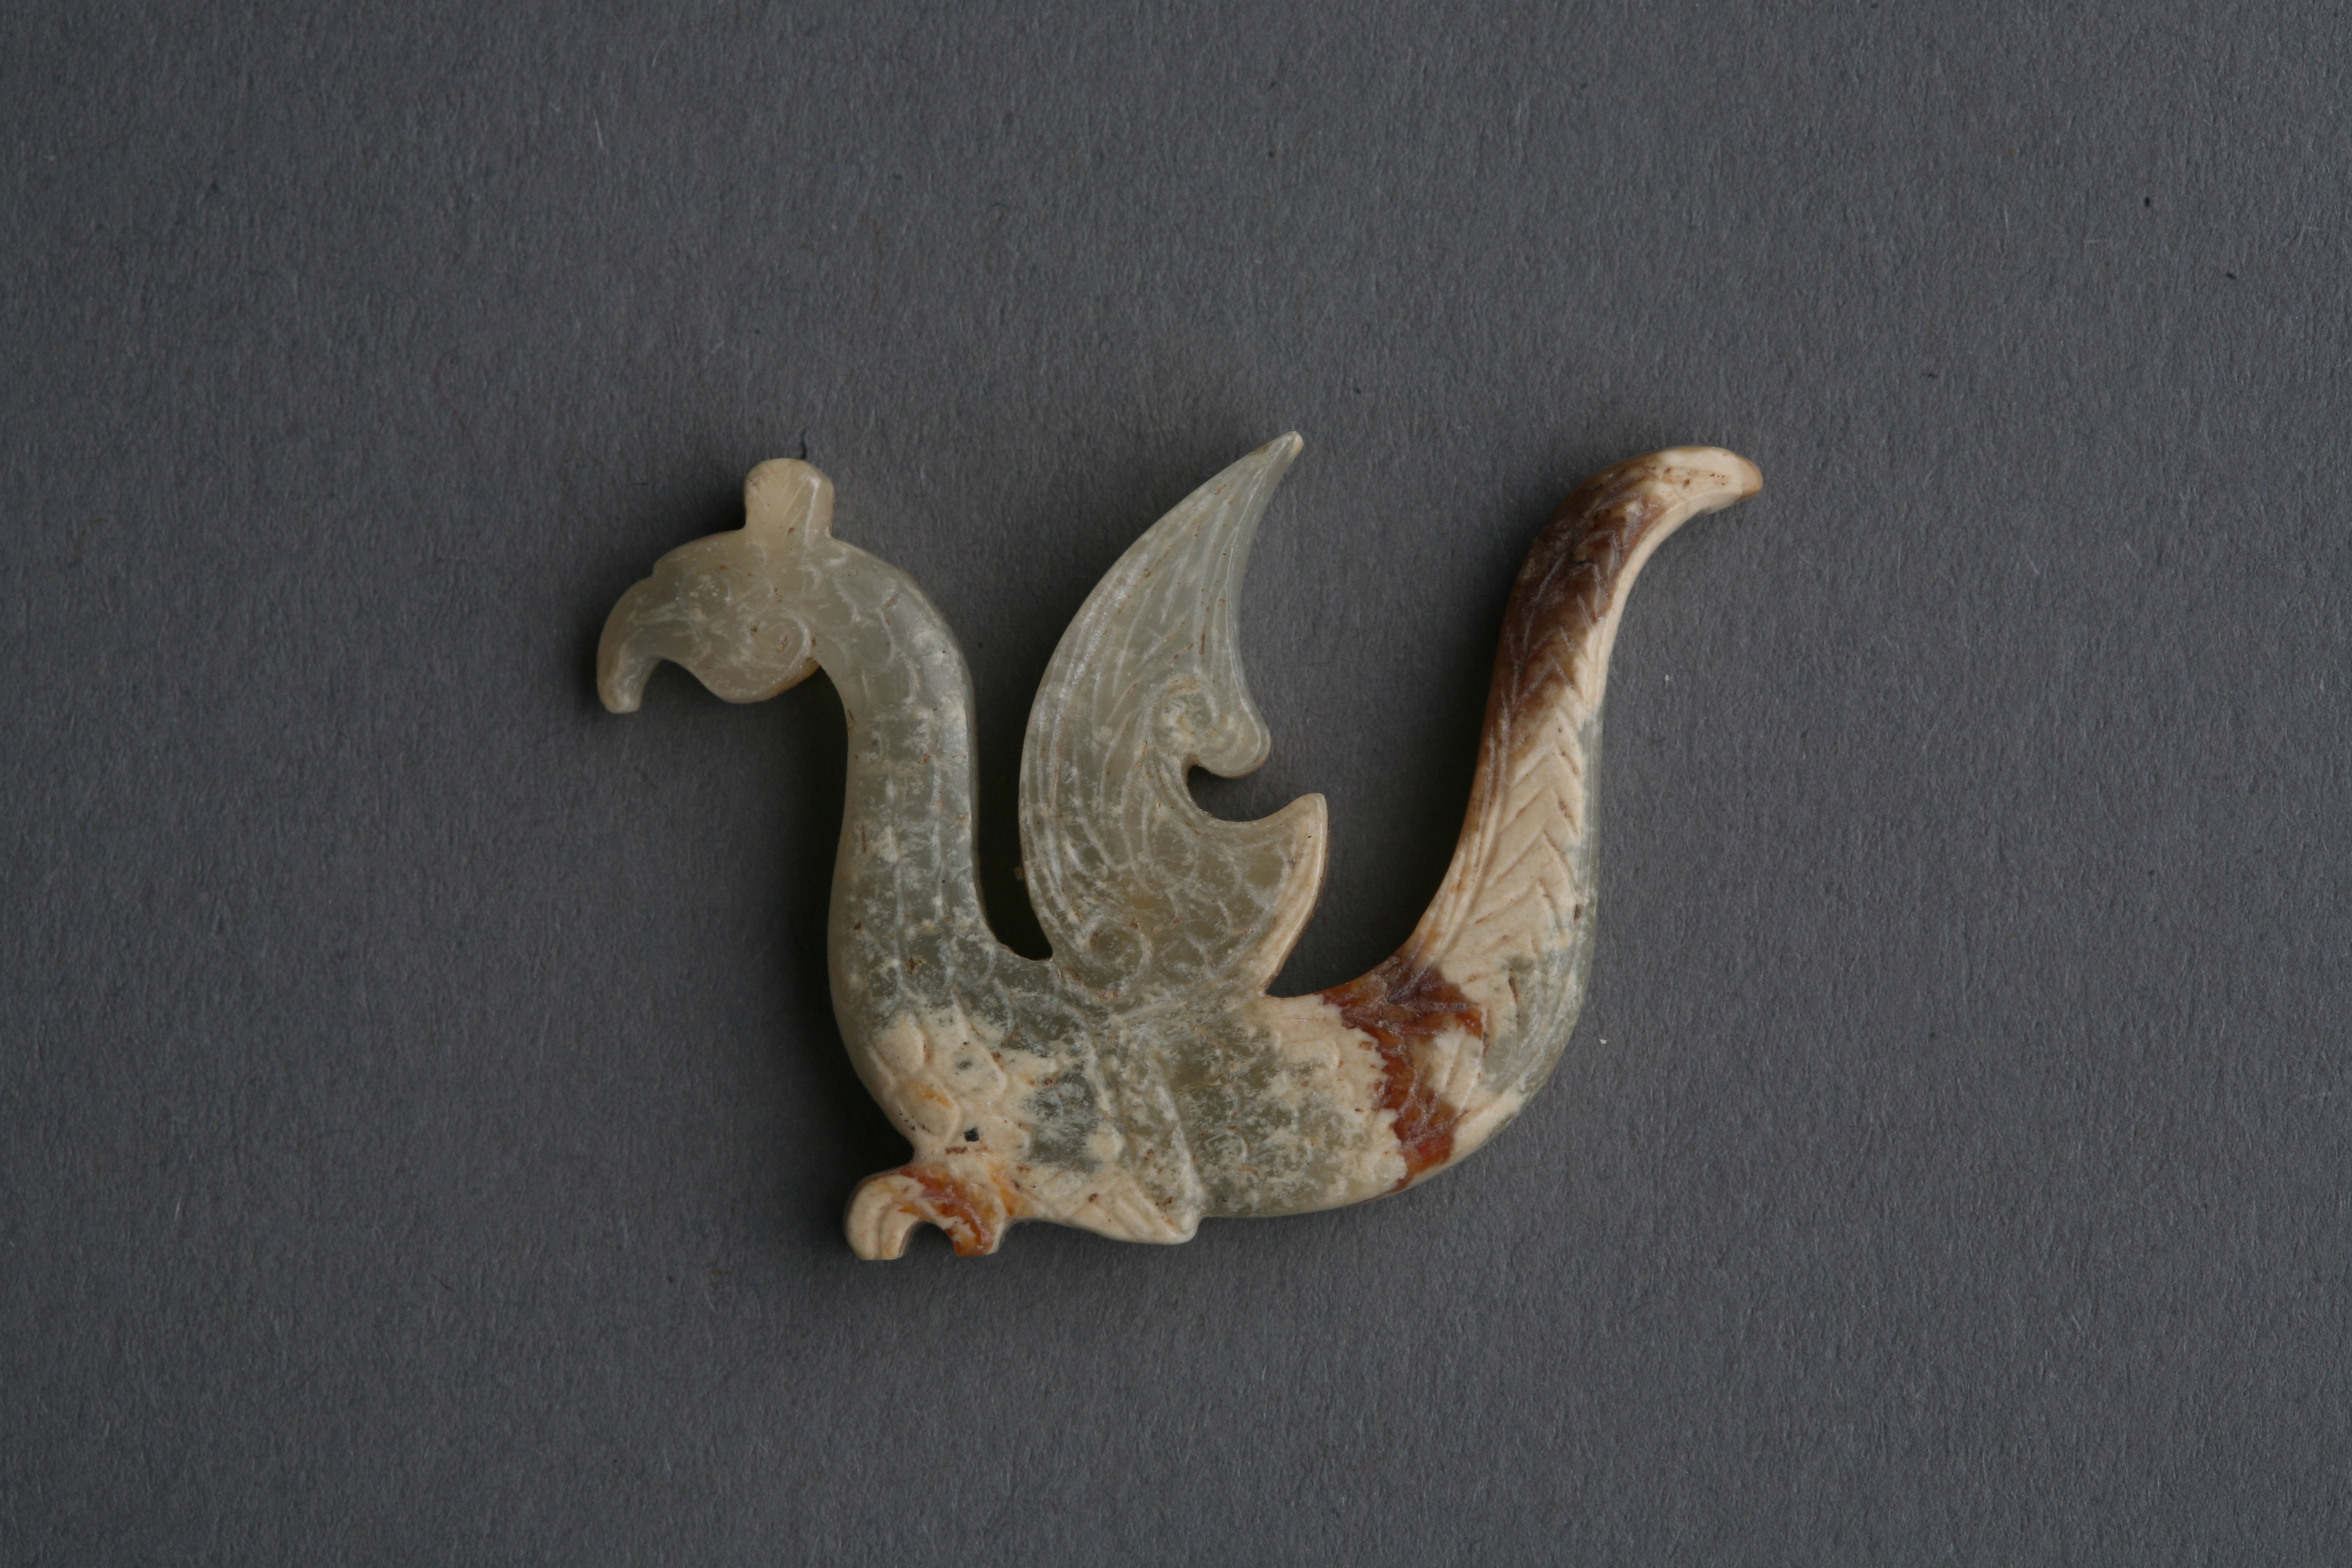 印纹硬陶是中国青铜时代（夏、商、西周至年龄期间）至汉代风行于幼江中下游战东南沿海地域的一种日用陶器